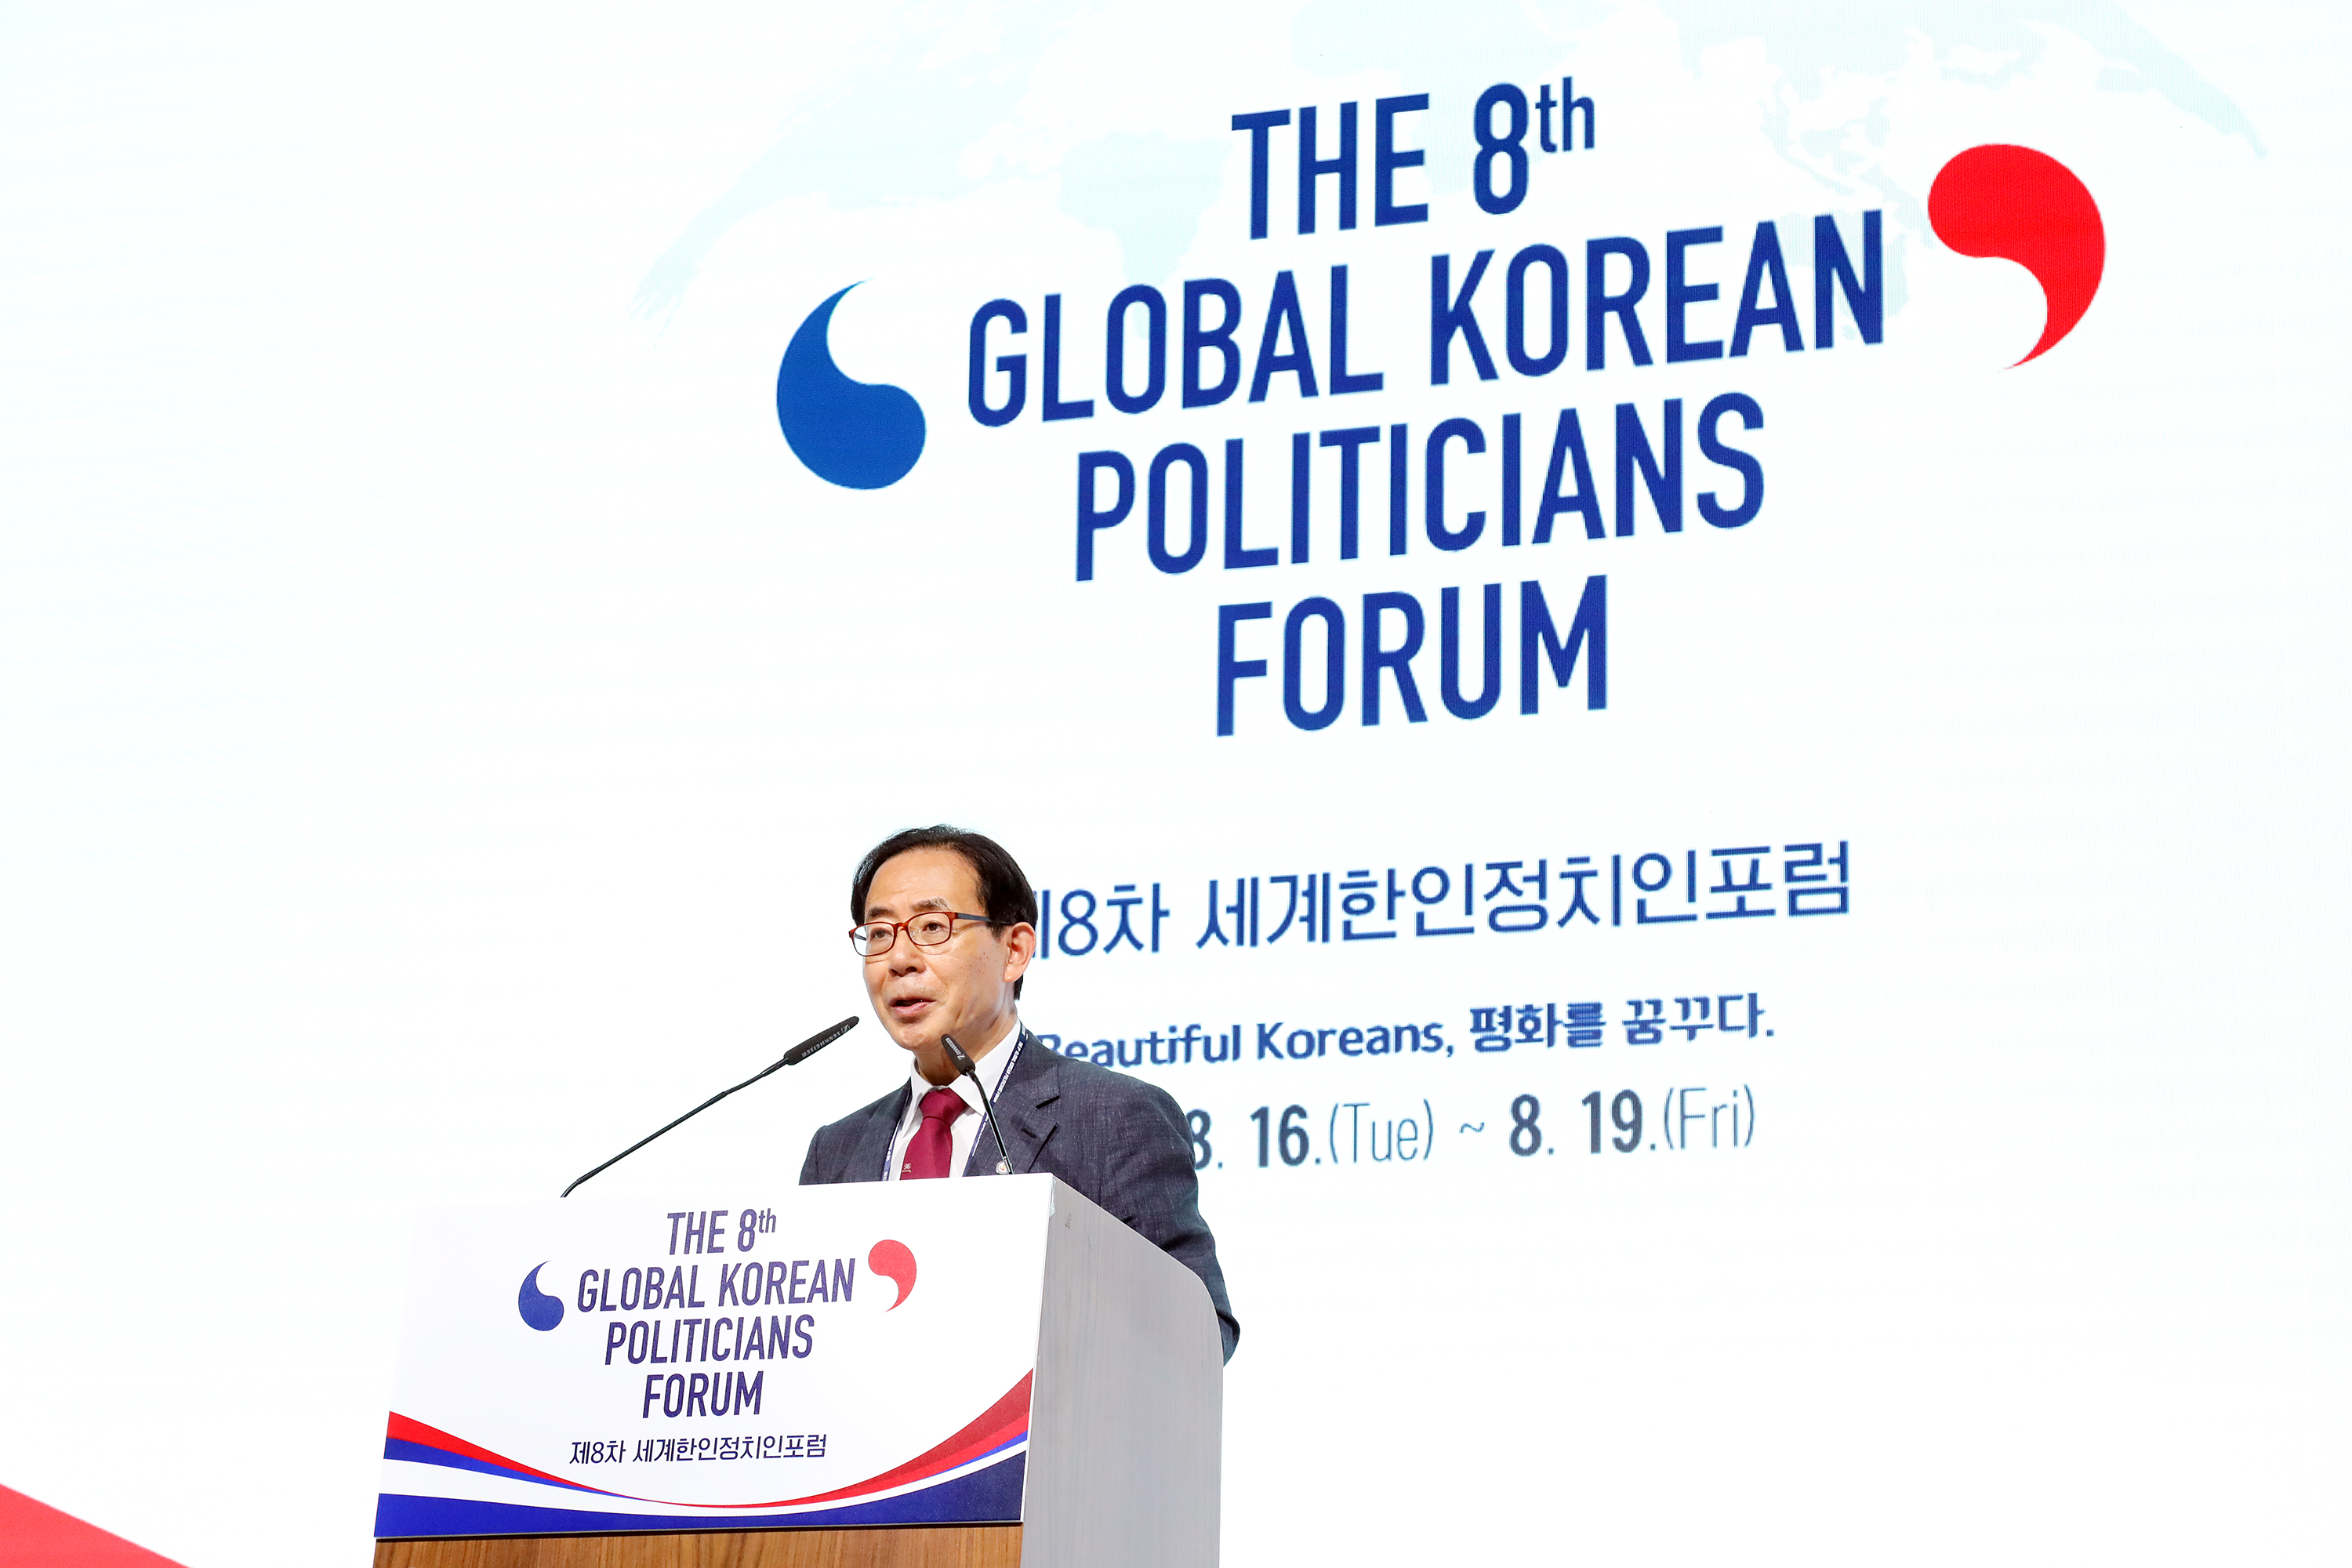 Председатель Ким Сон Гон читает специальную лекцию на тему «Beautiful Korean, Beautiful Politician» в первый день форума